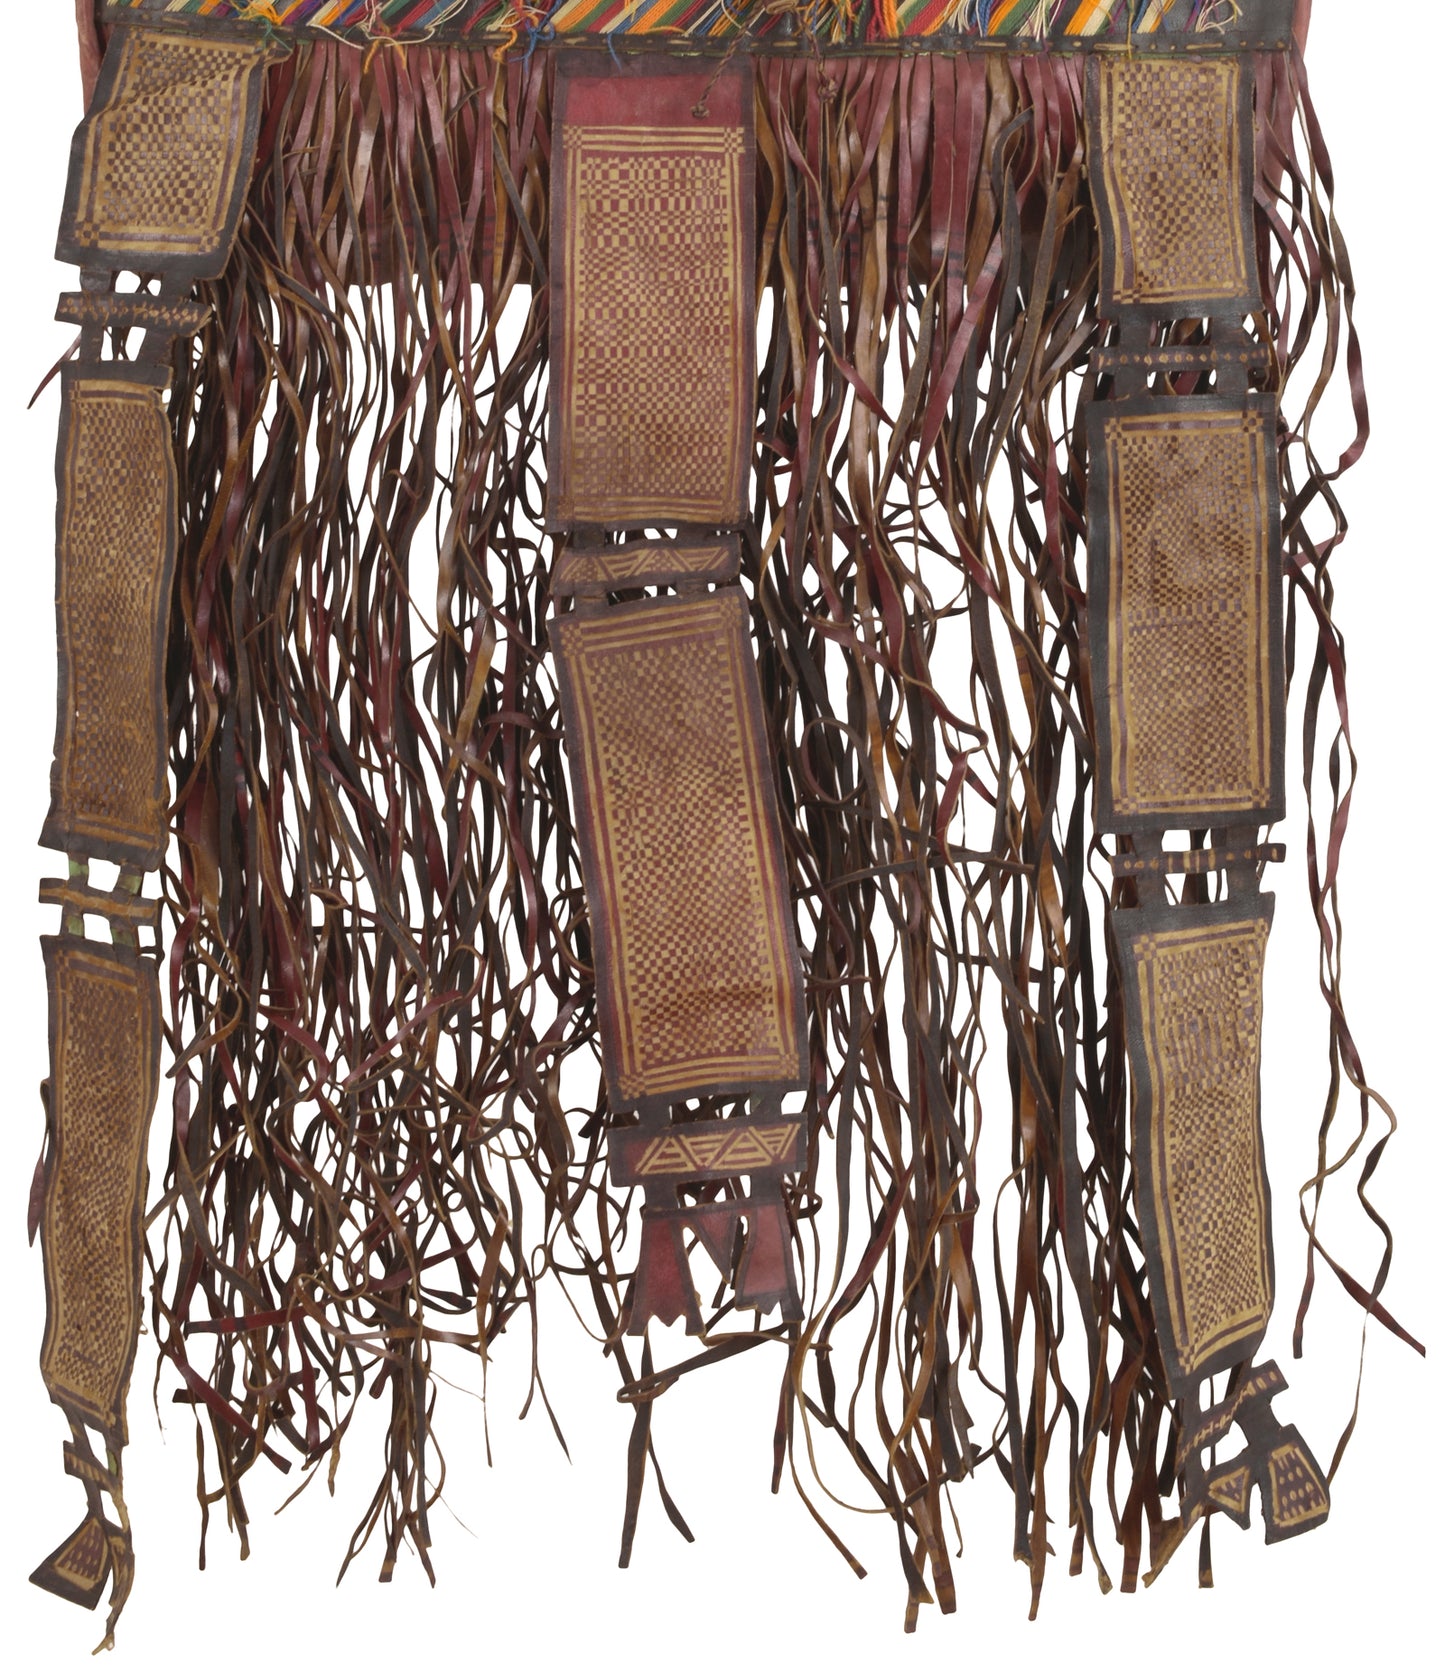 Bolso de caballo camello de cuero tuareg africano antiguo de Níger Peul Fulani Sahara art - Tribalgh